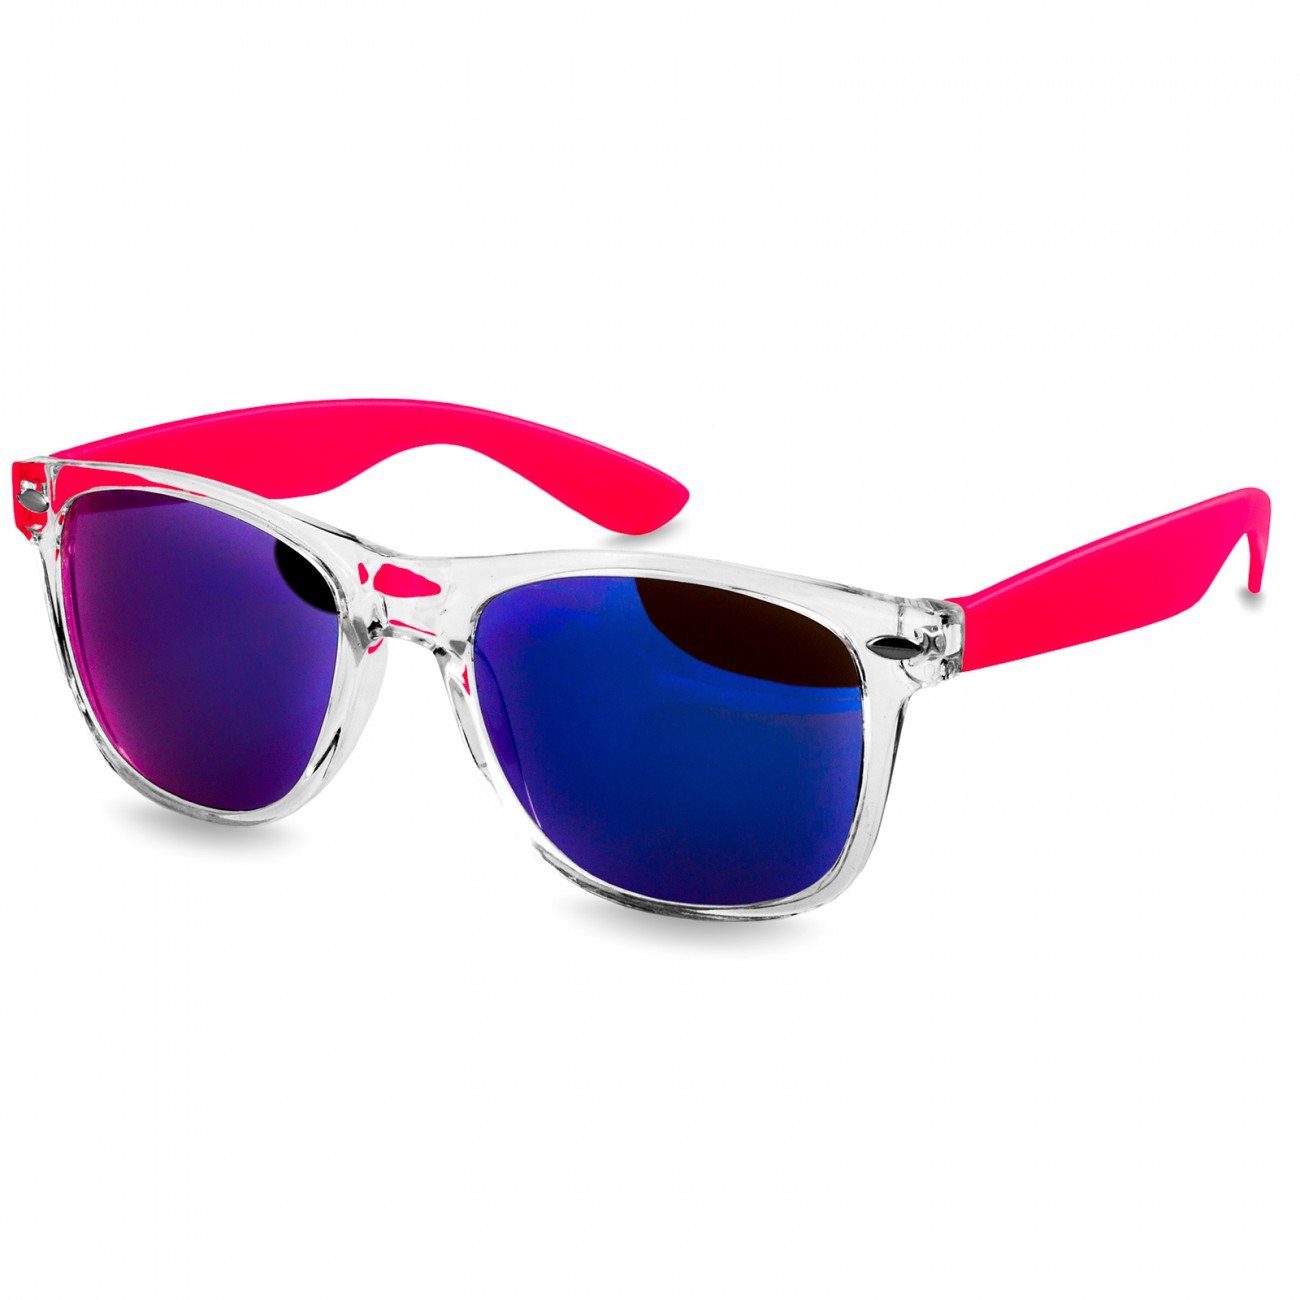 Damen RETRO pink / verspiegelt Caspar Sonnenbrille SG017 Designbrille blau